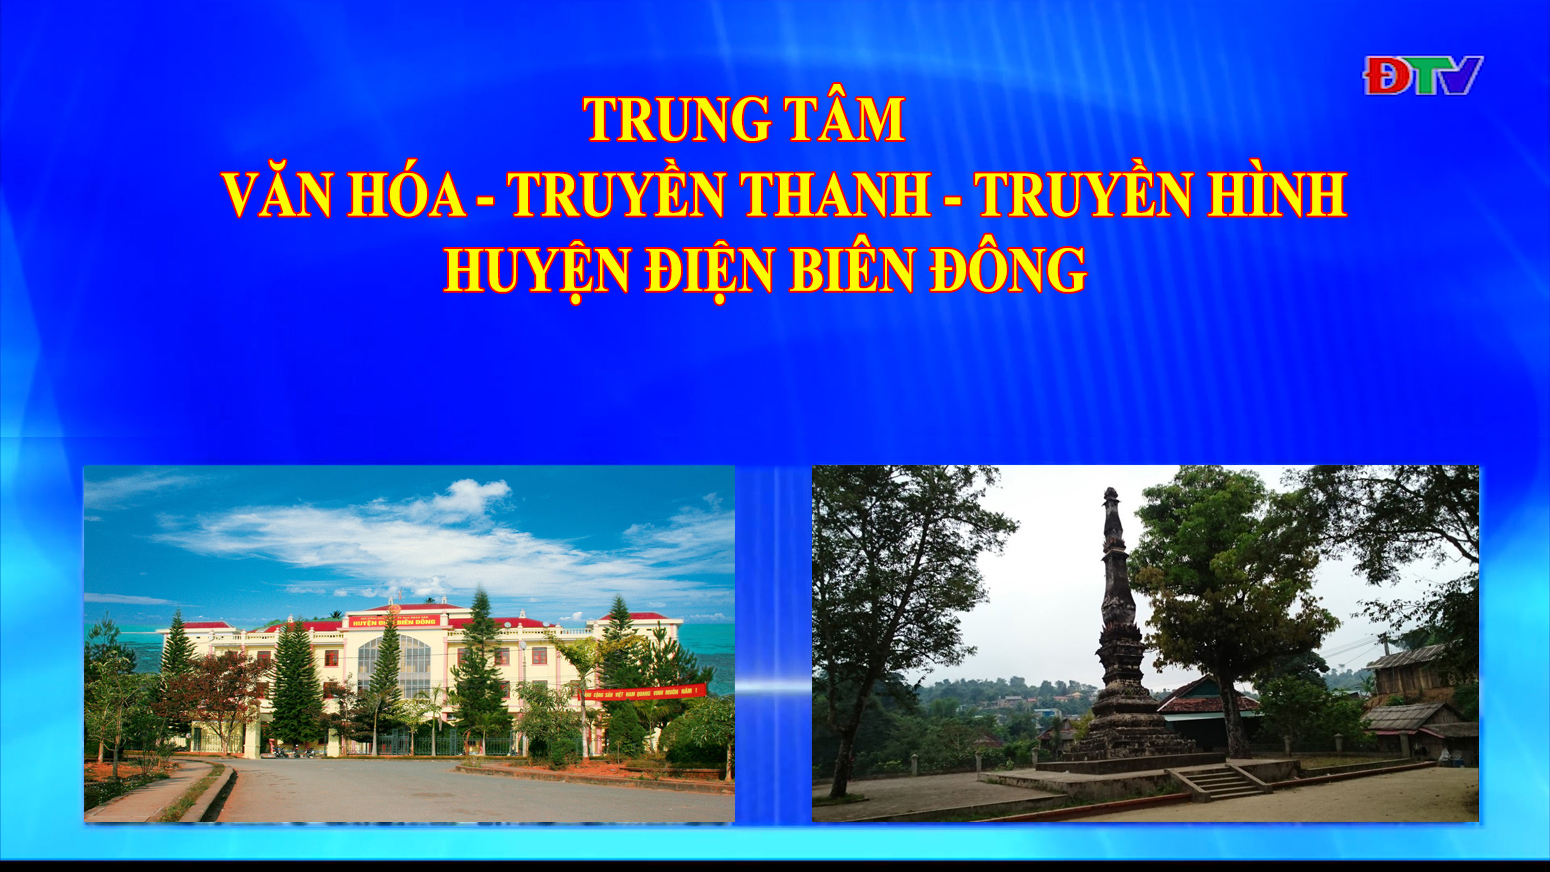 Trung tâm VH-TTTH huyện Điện Biên Đông (Ngày 1-1-2022)